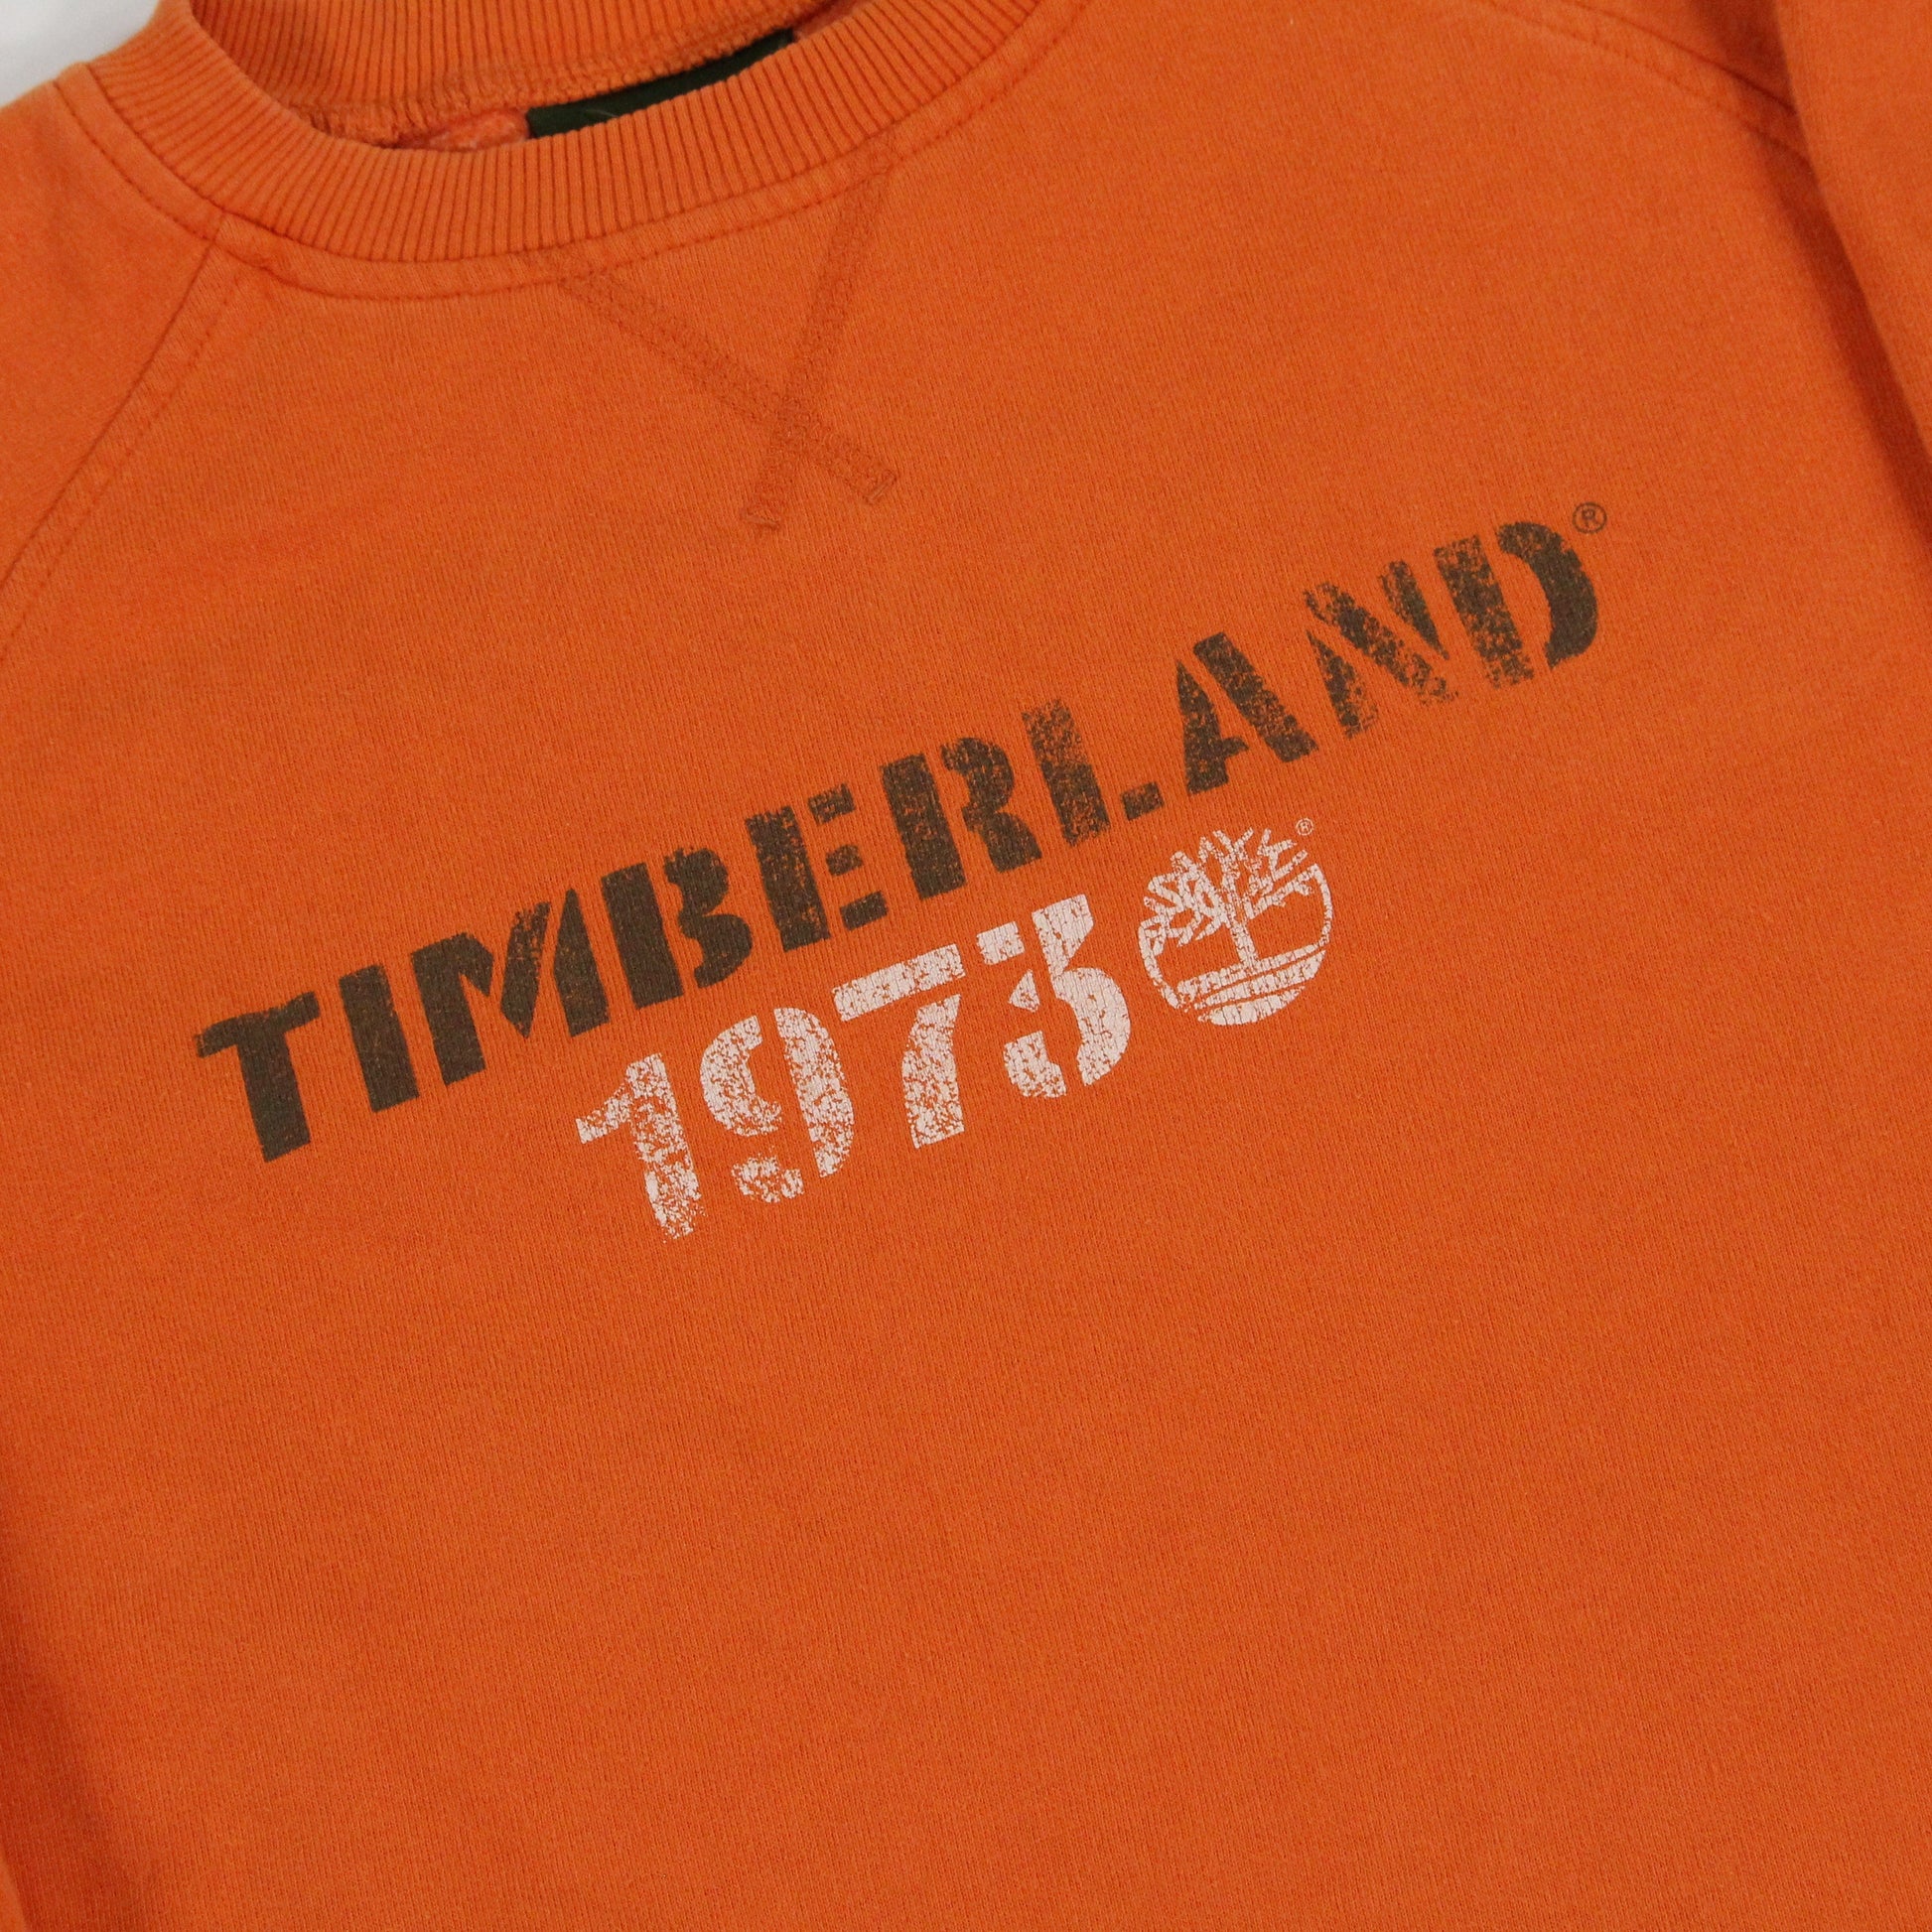 Timberland Timberland Sweatshirt Size Small